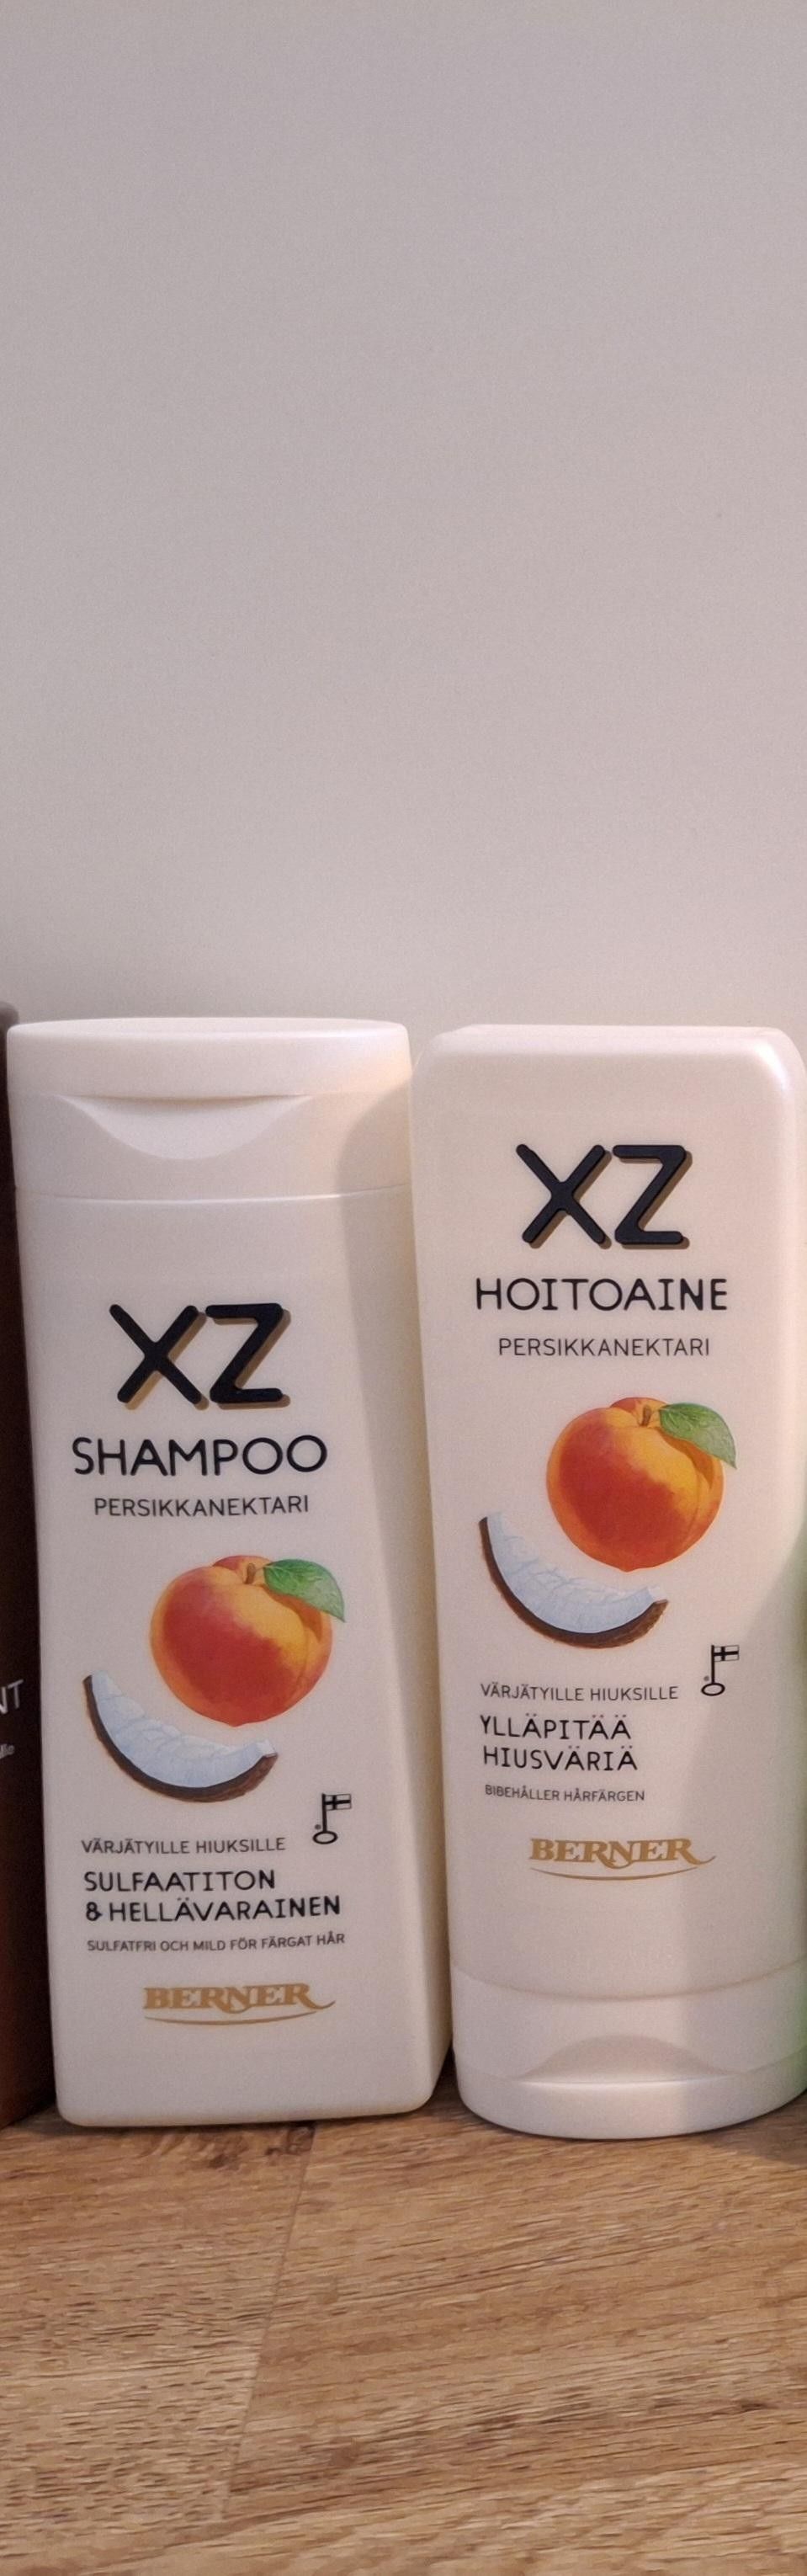 XZ shampoo ja hoitoaine (uudet)